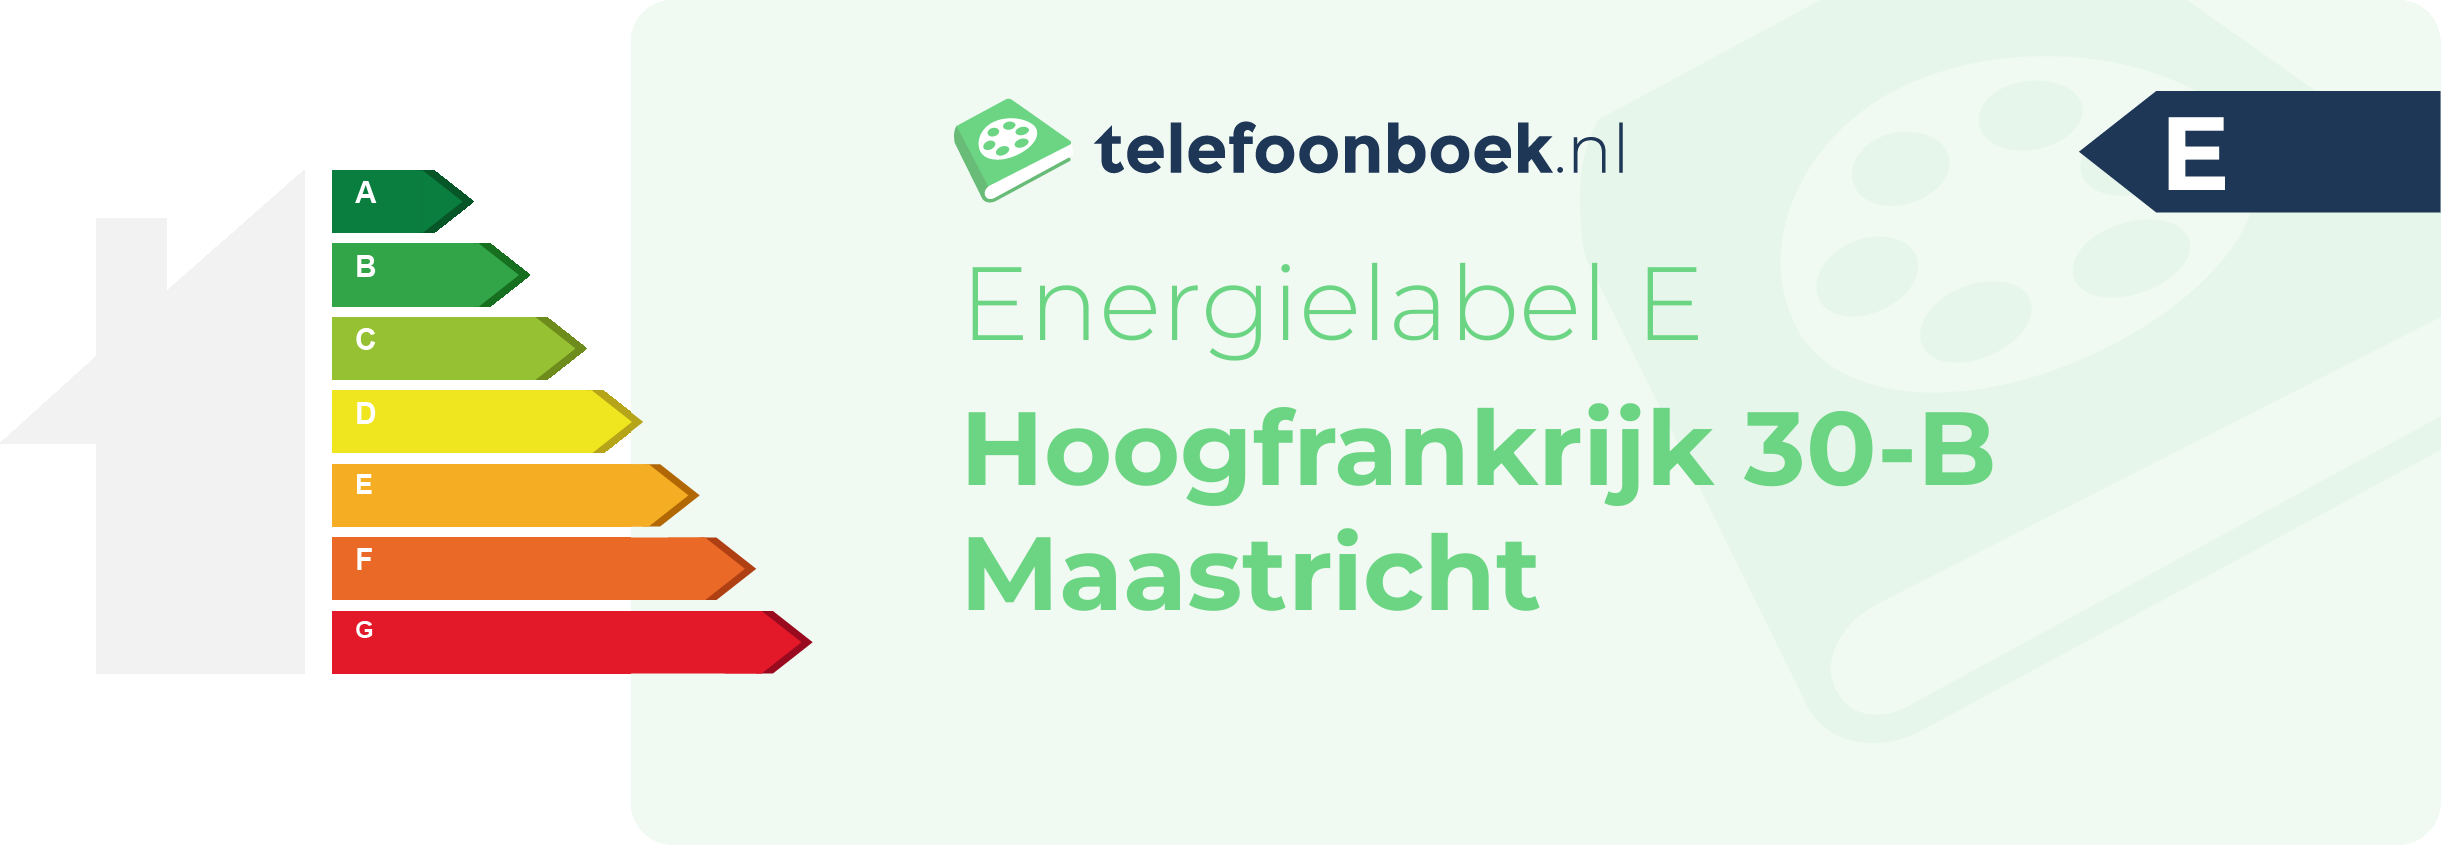 Energielabel Hoogfrankrijk 30-B Maastricht